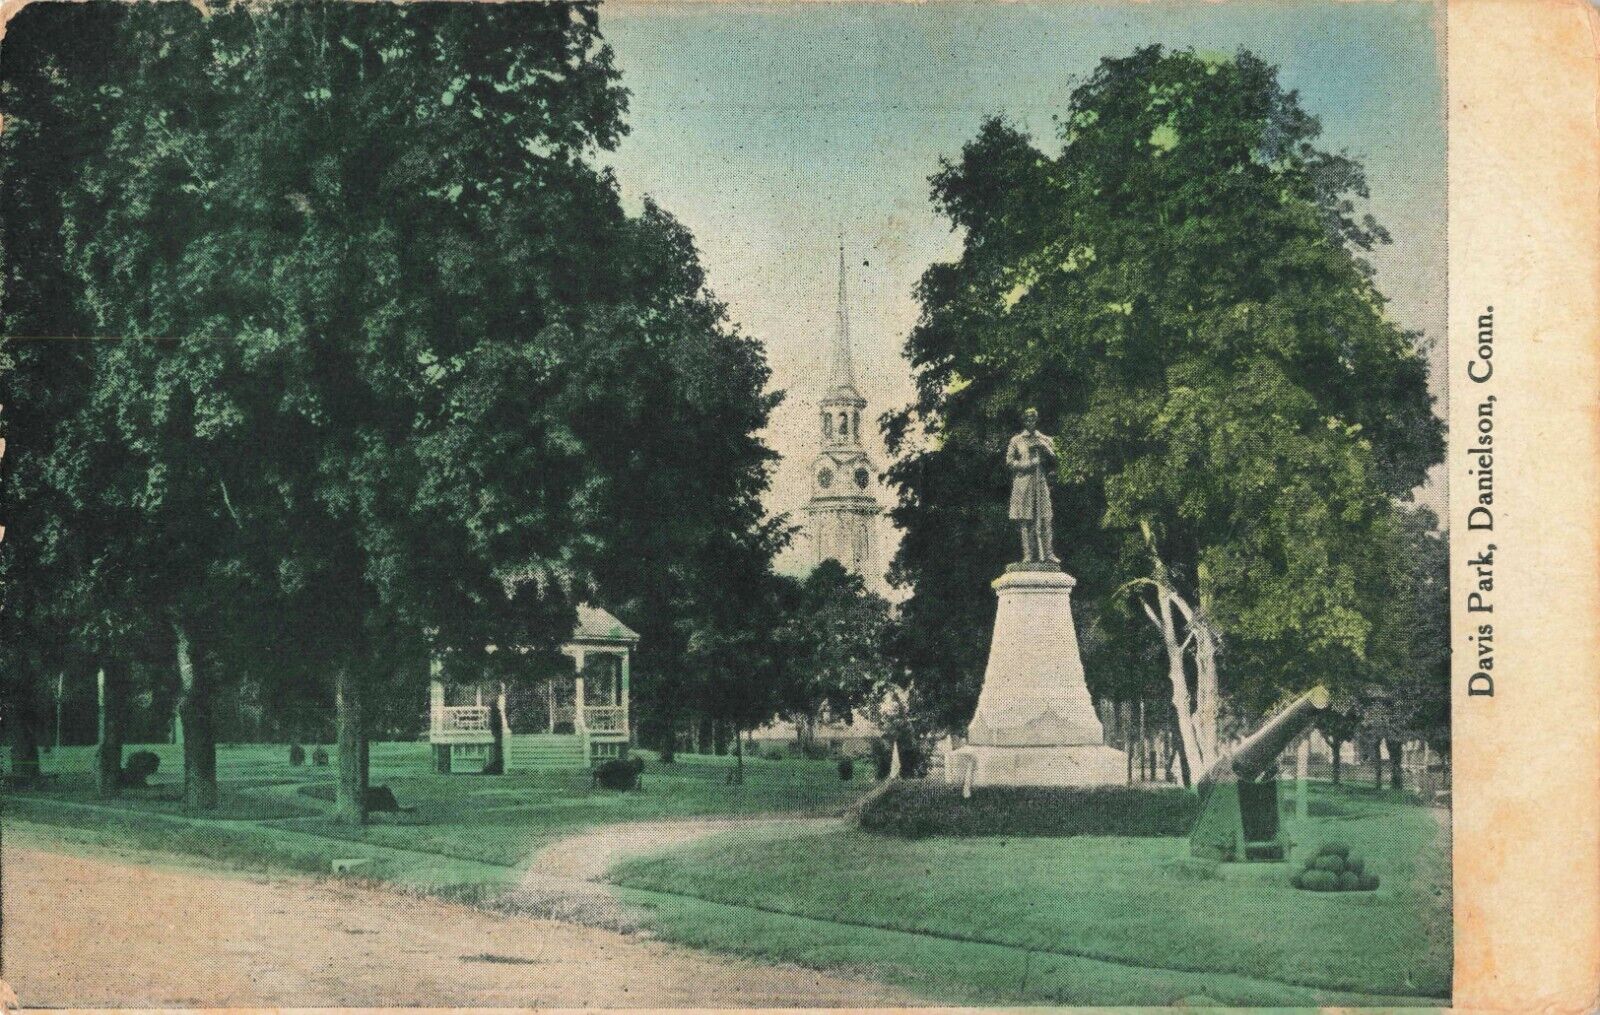 Davis Park Danielson Connecticut CT Monument Church 1915 Vintage Postcard